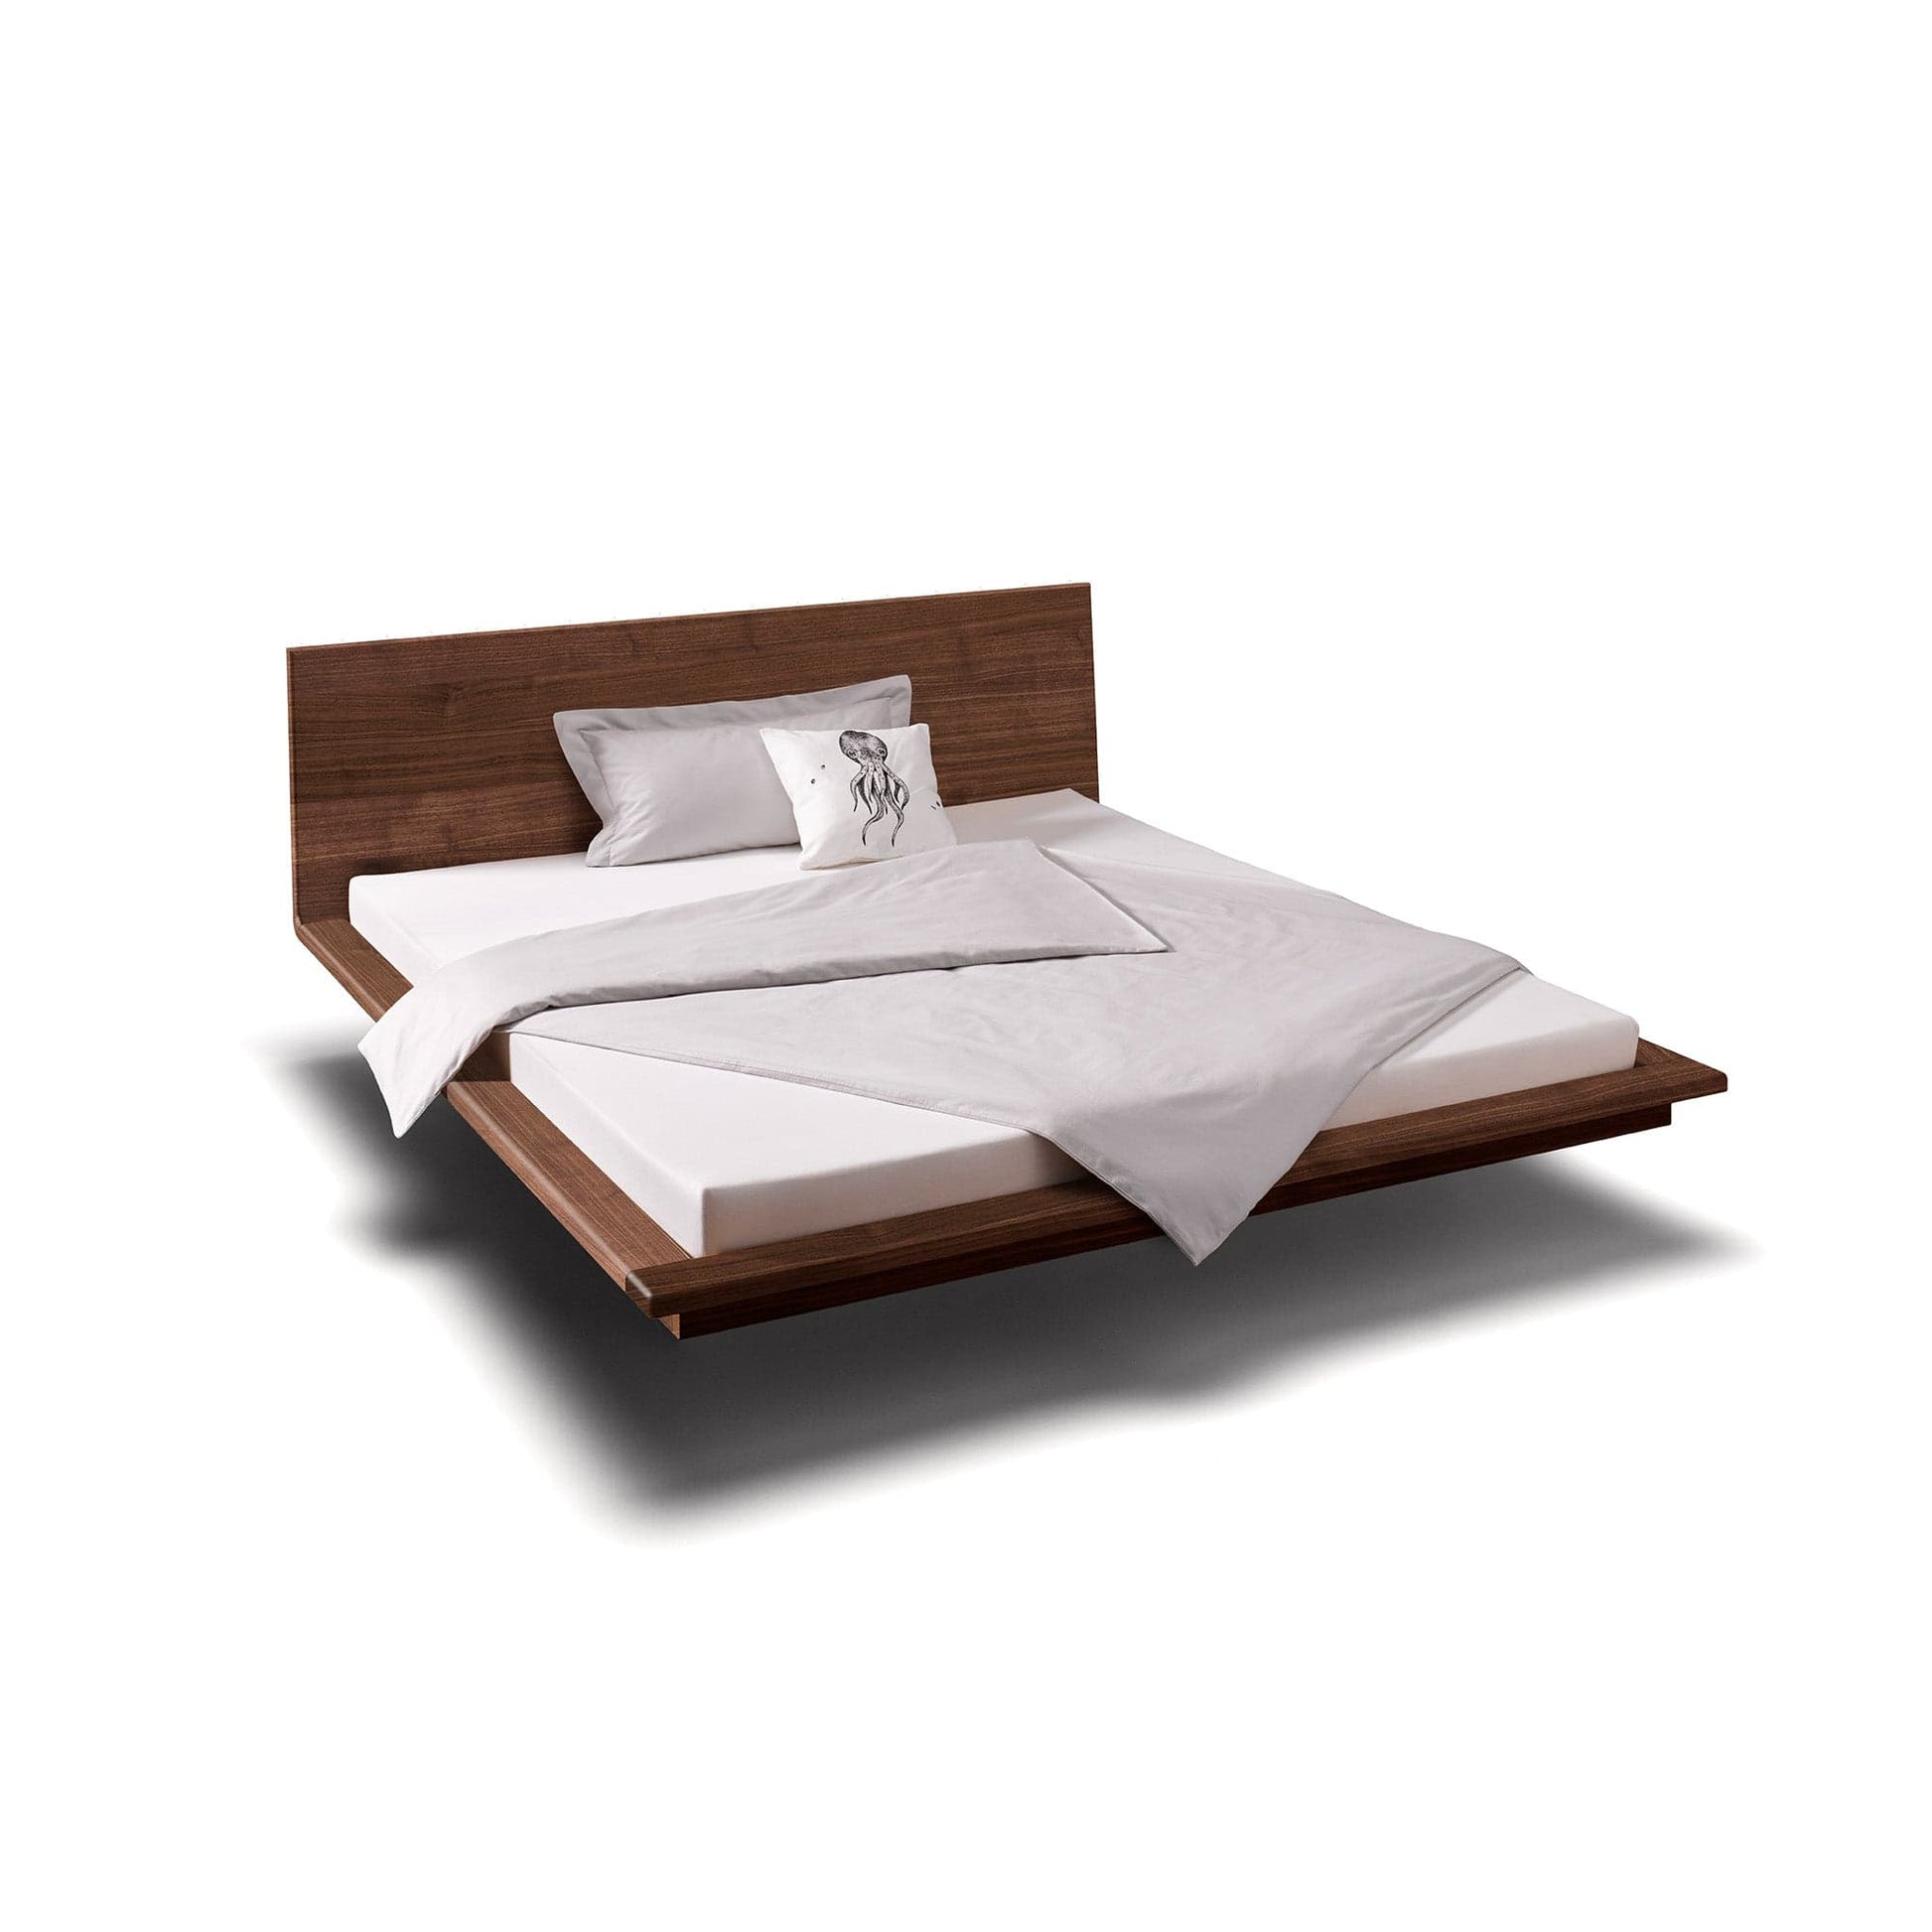 Holzmanufaktur Bett MATIS ist ein hochwertiges, schwebendes  Designerbett aus Nussbaum.